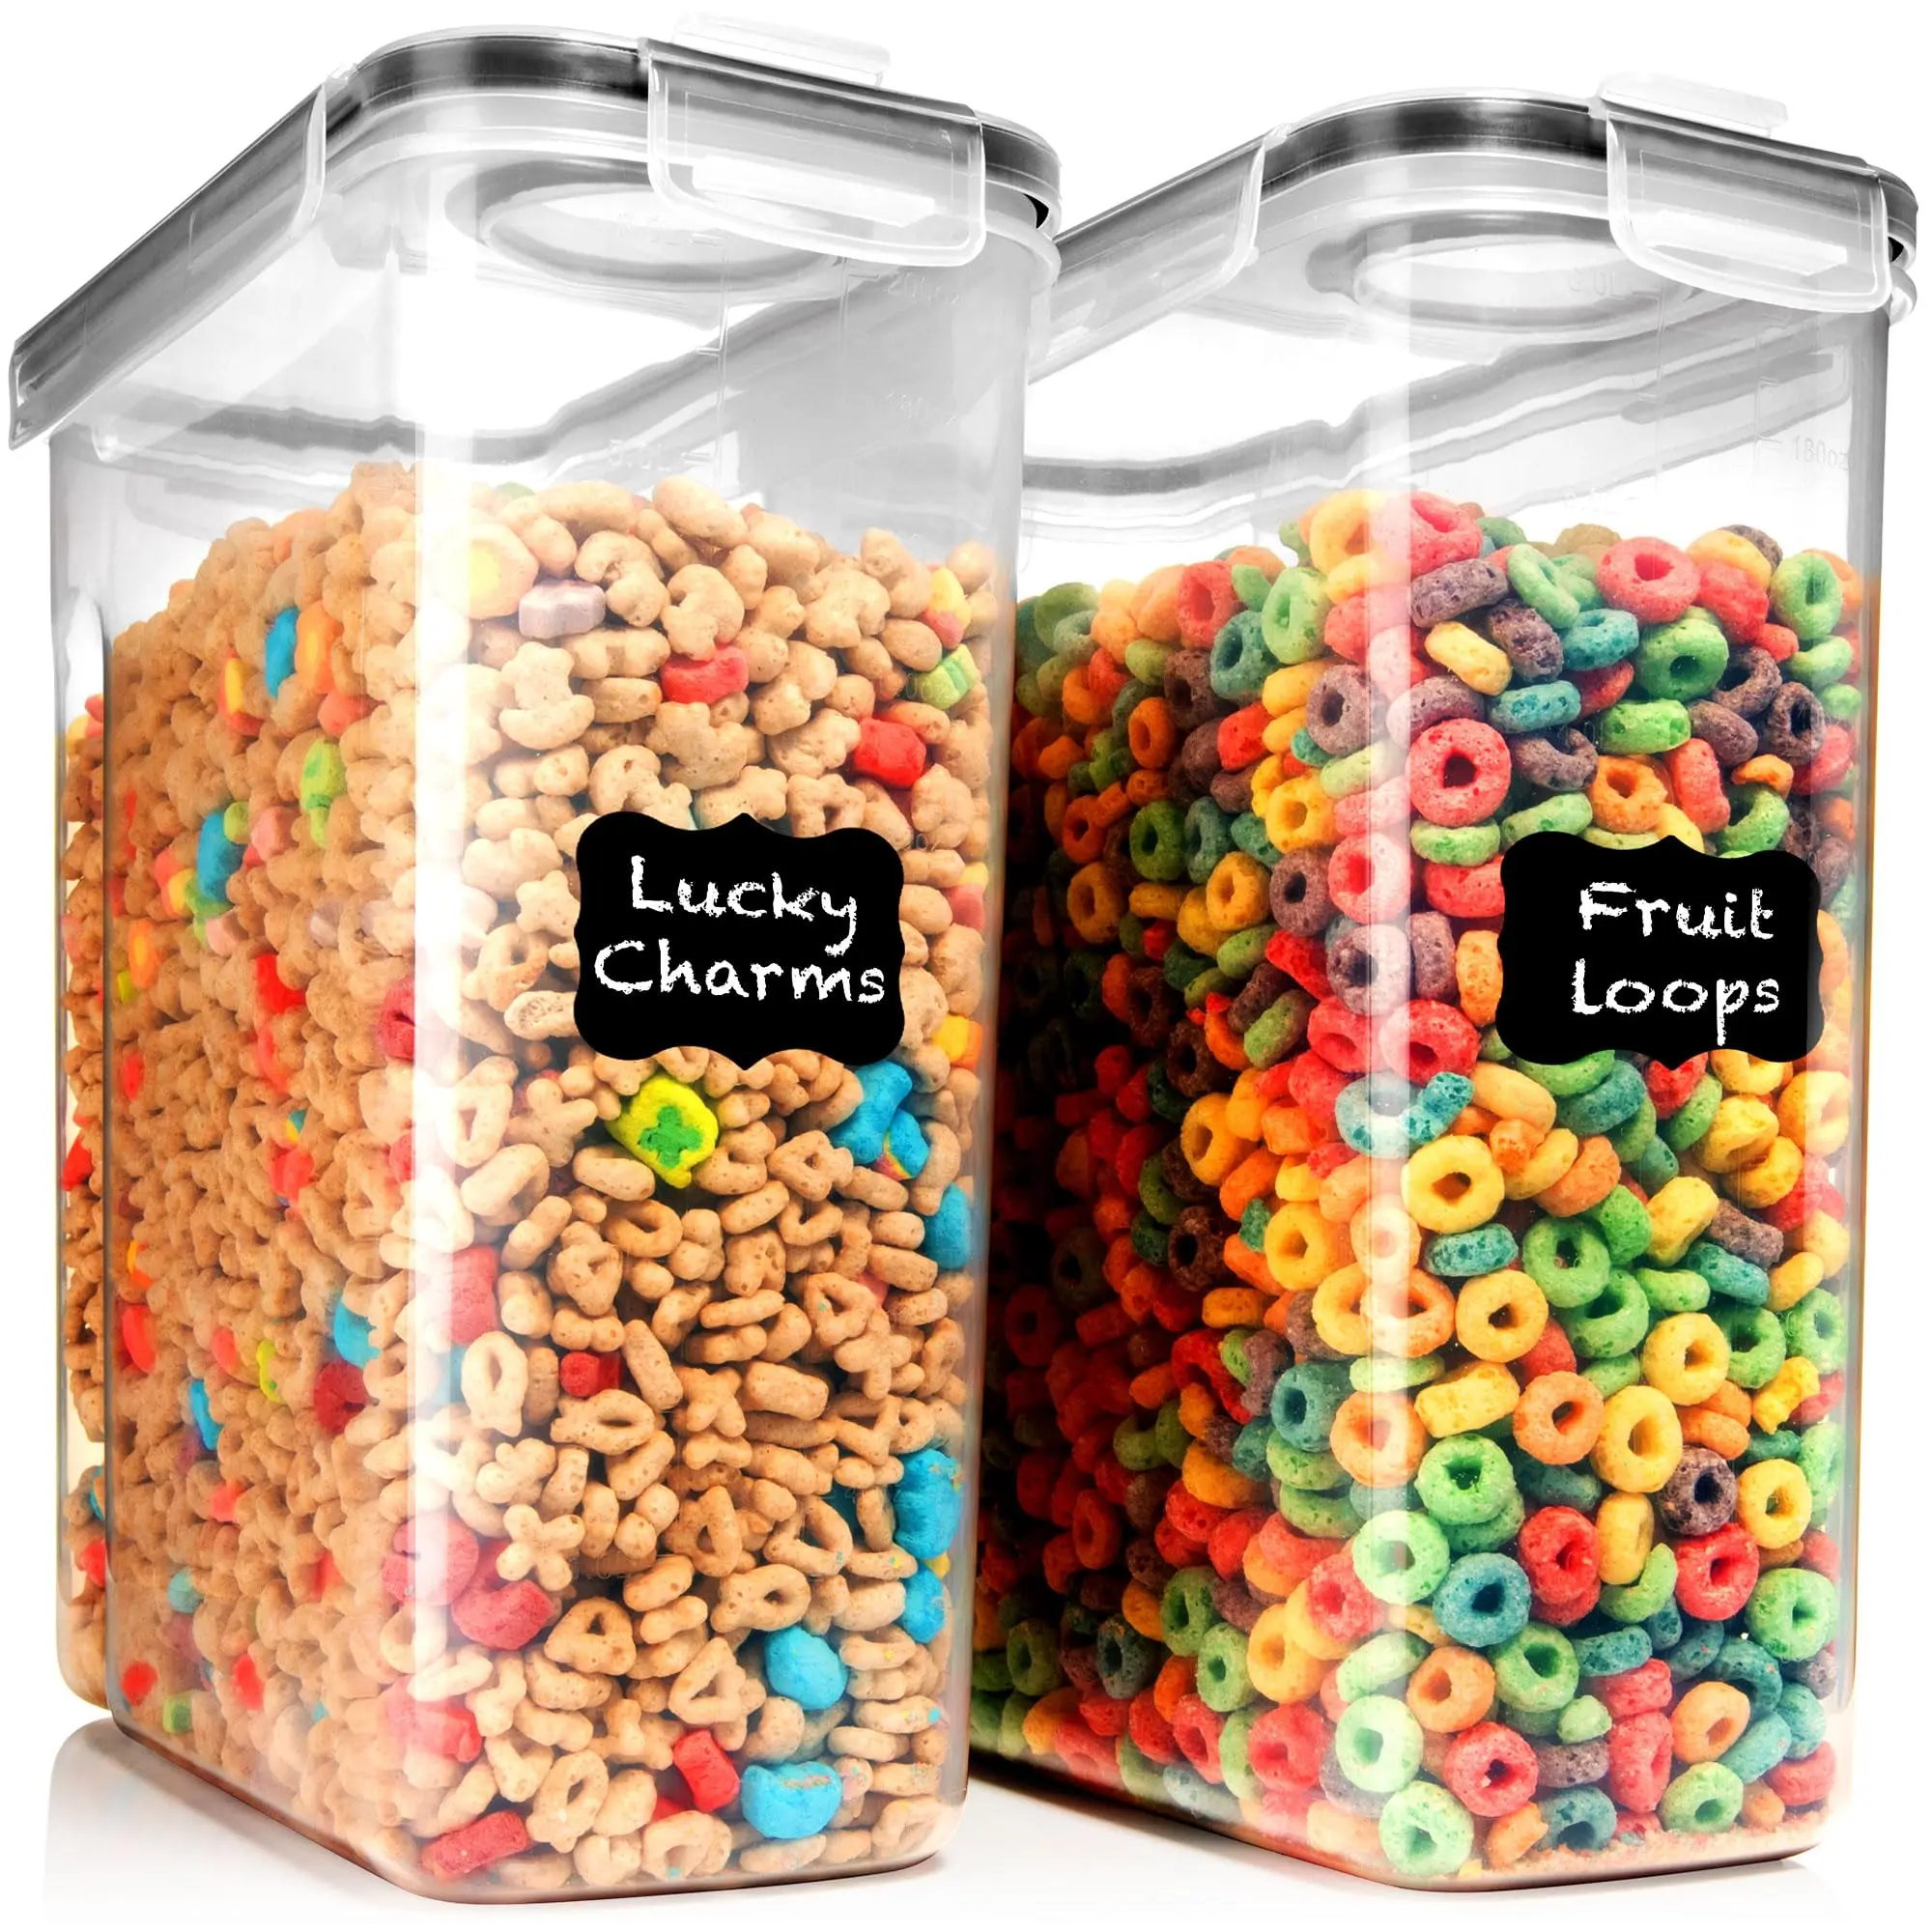 almacenado a granel de plastico - Qué es el almacenamiento a granel